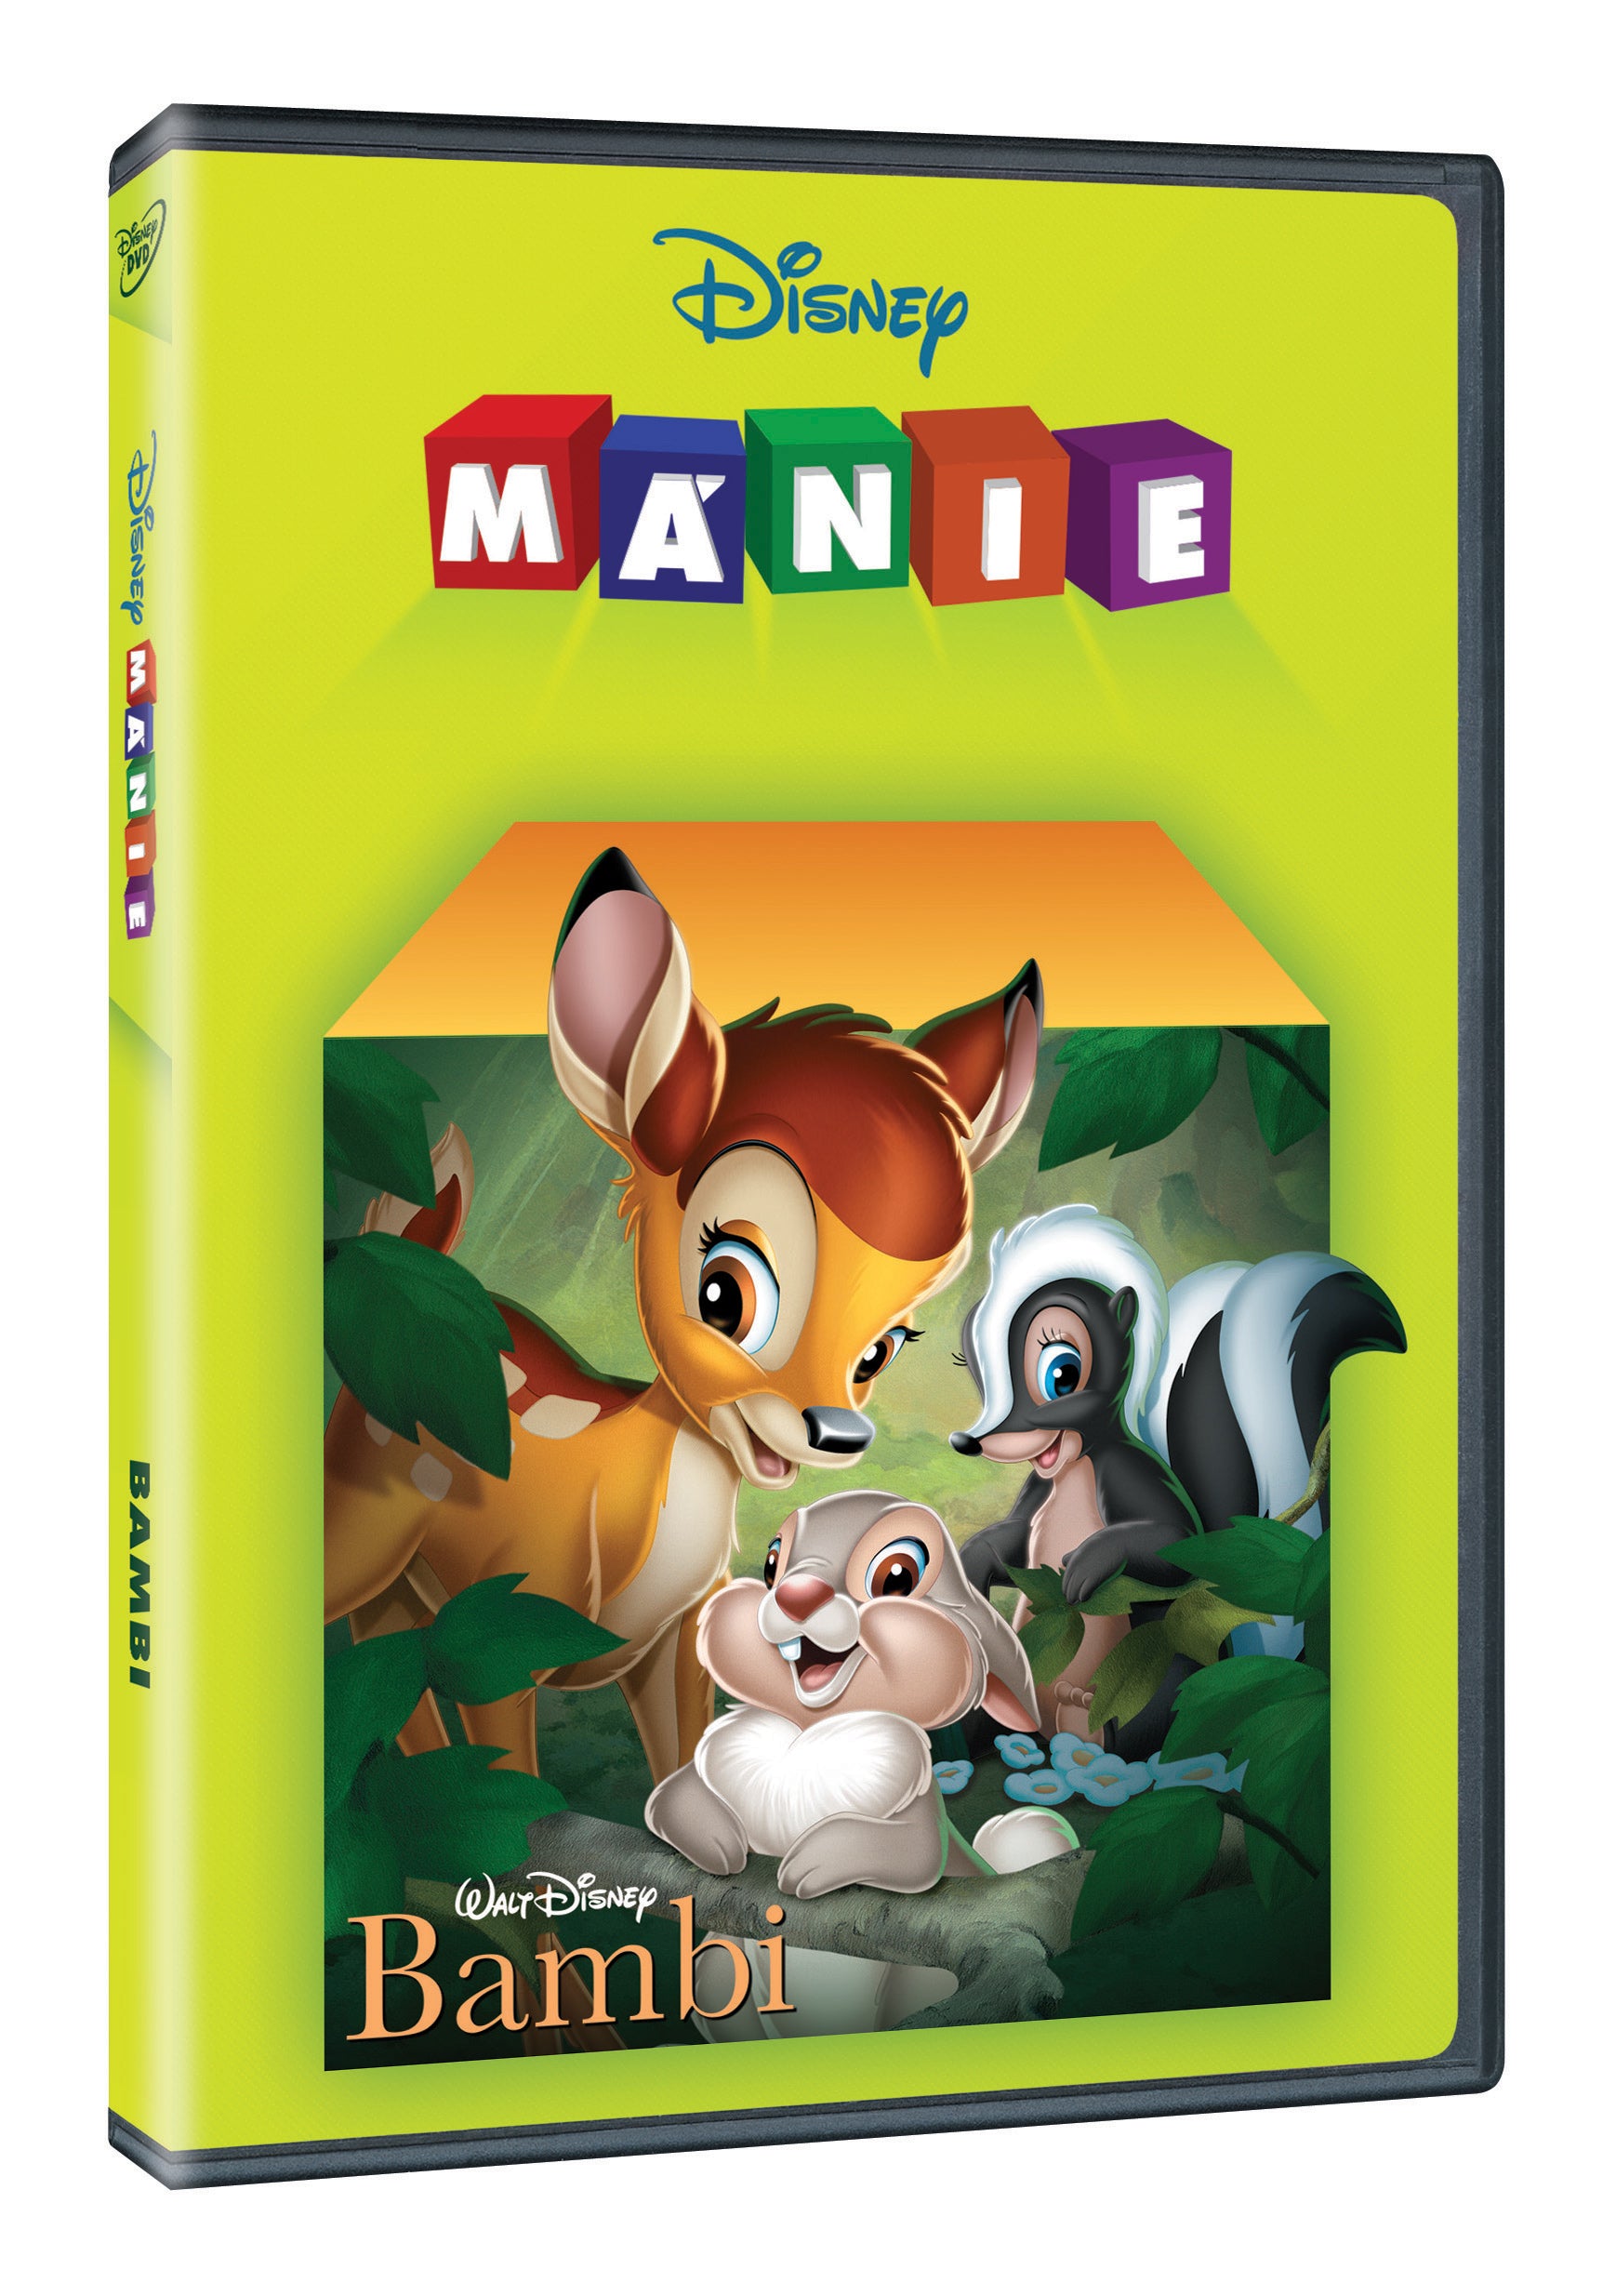 Bambi DE - Disney manie (Bambi DE)